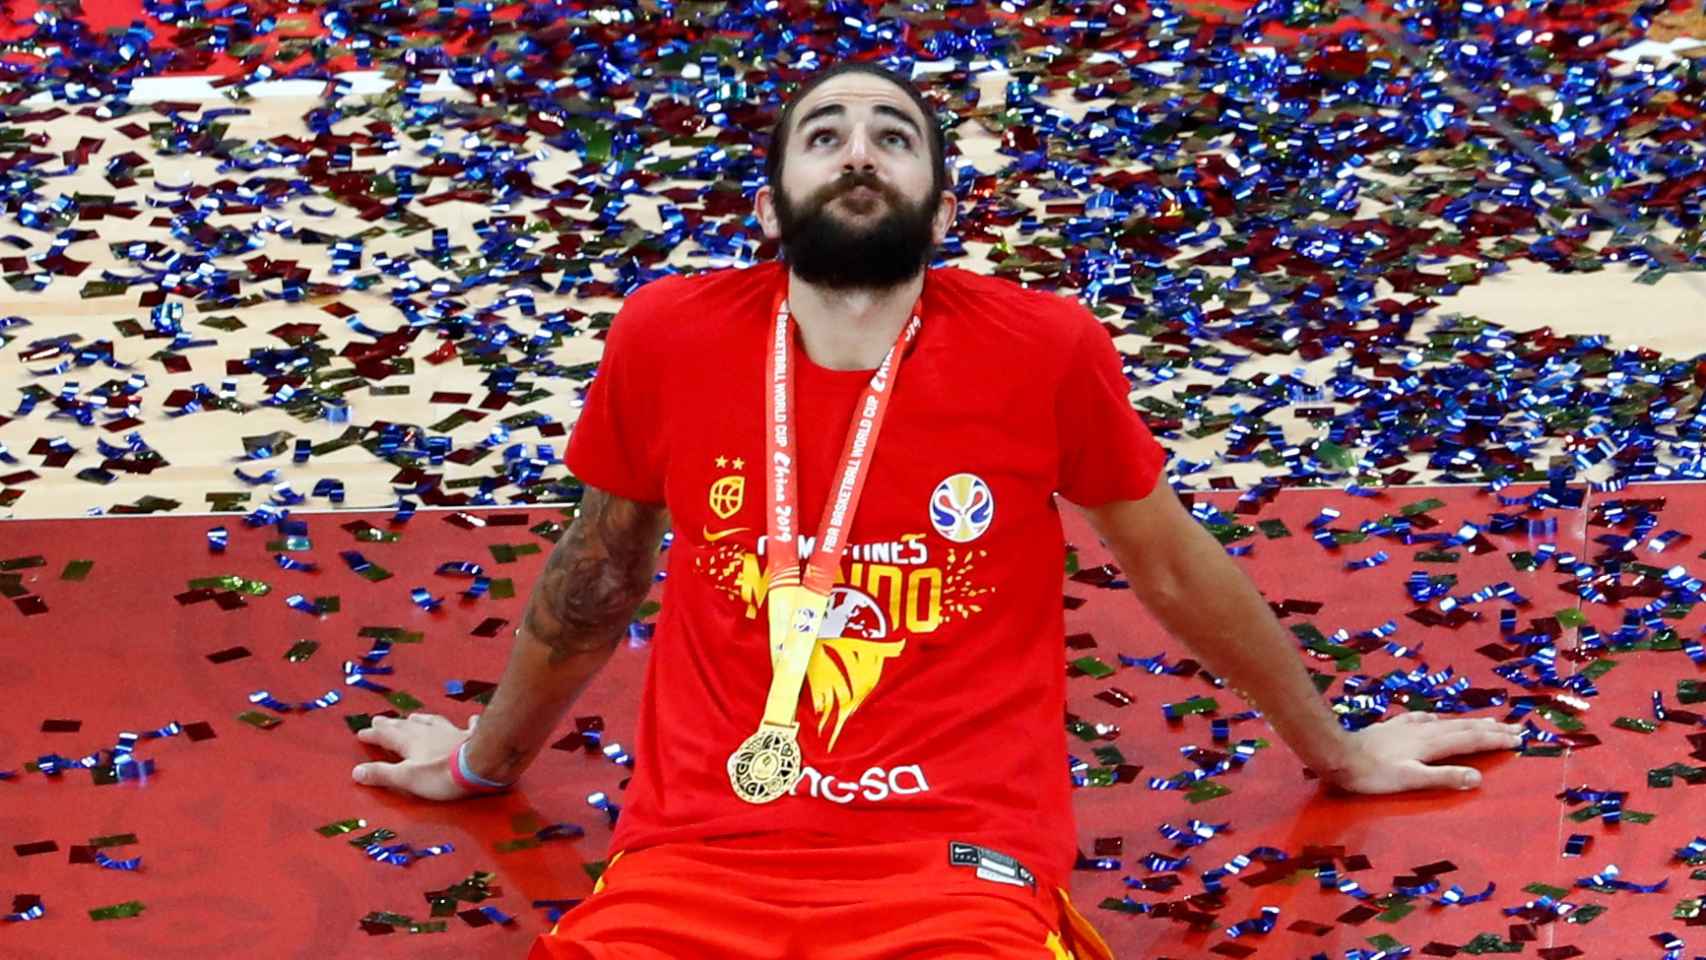 Arne imagen lb Cómo y dónde comprar la camiseta de campeón del mundo de la selección  española de baloncesto?